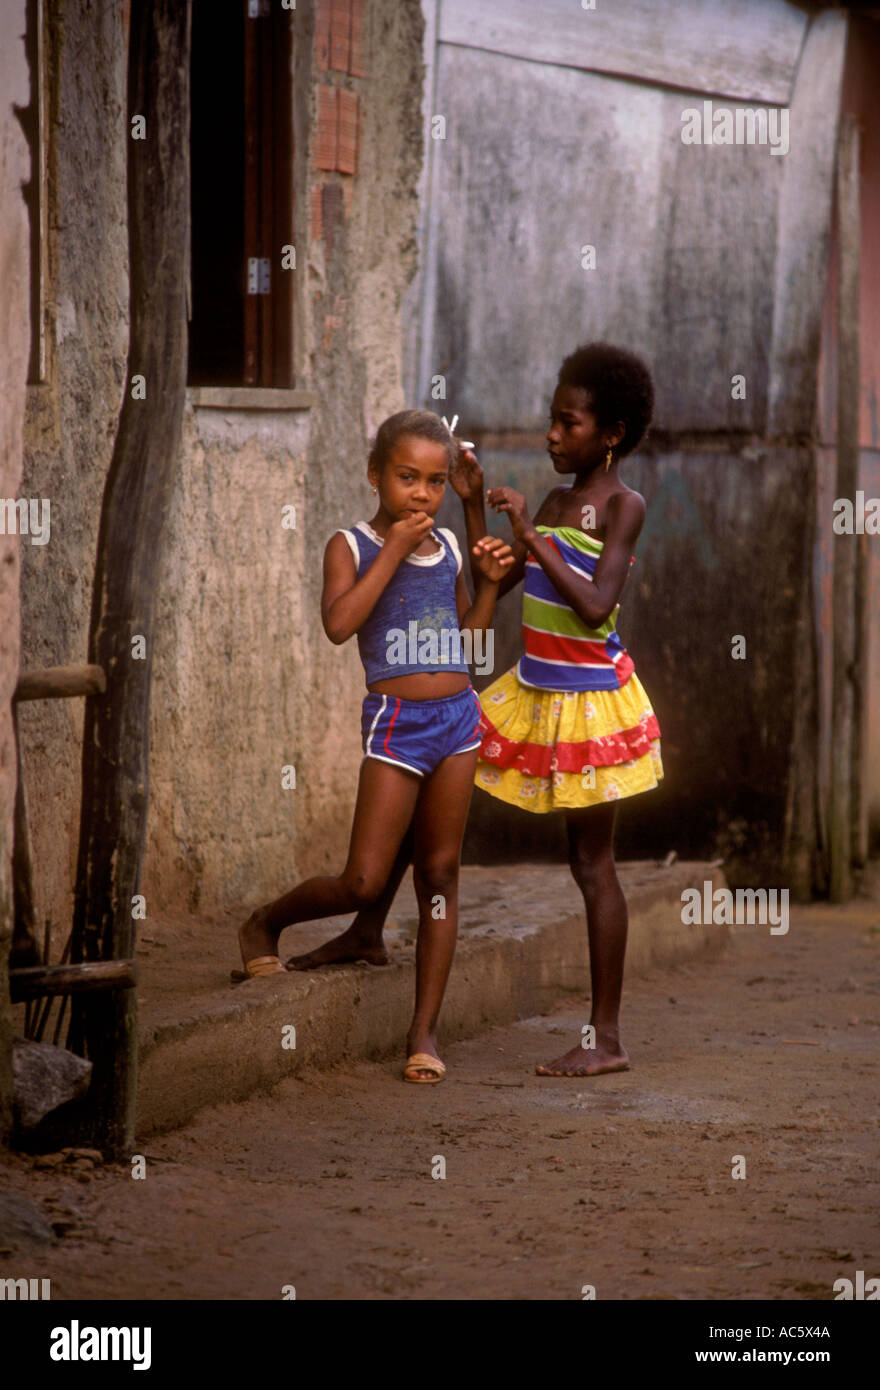 Favela Brazil Slums Girls Telegraph